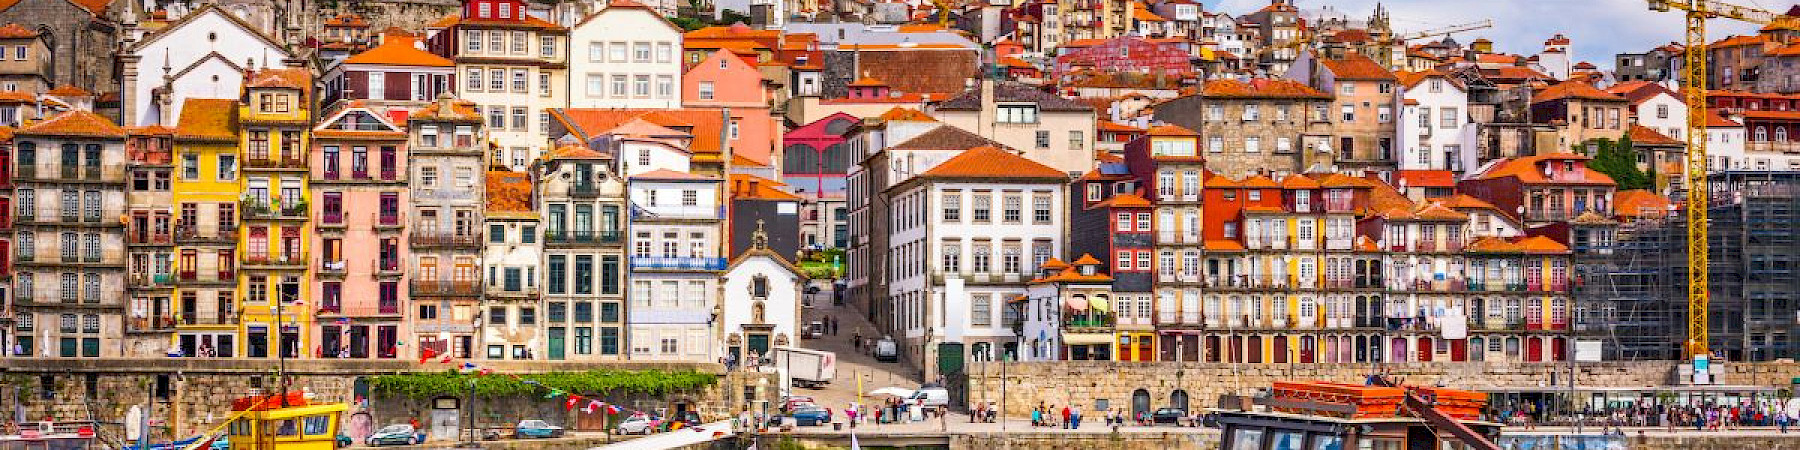 Varaa paikkasi Patinan lukijamatkalta Portoon huhtikuussa 2022!